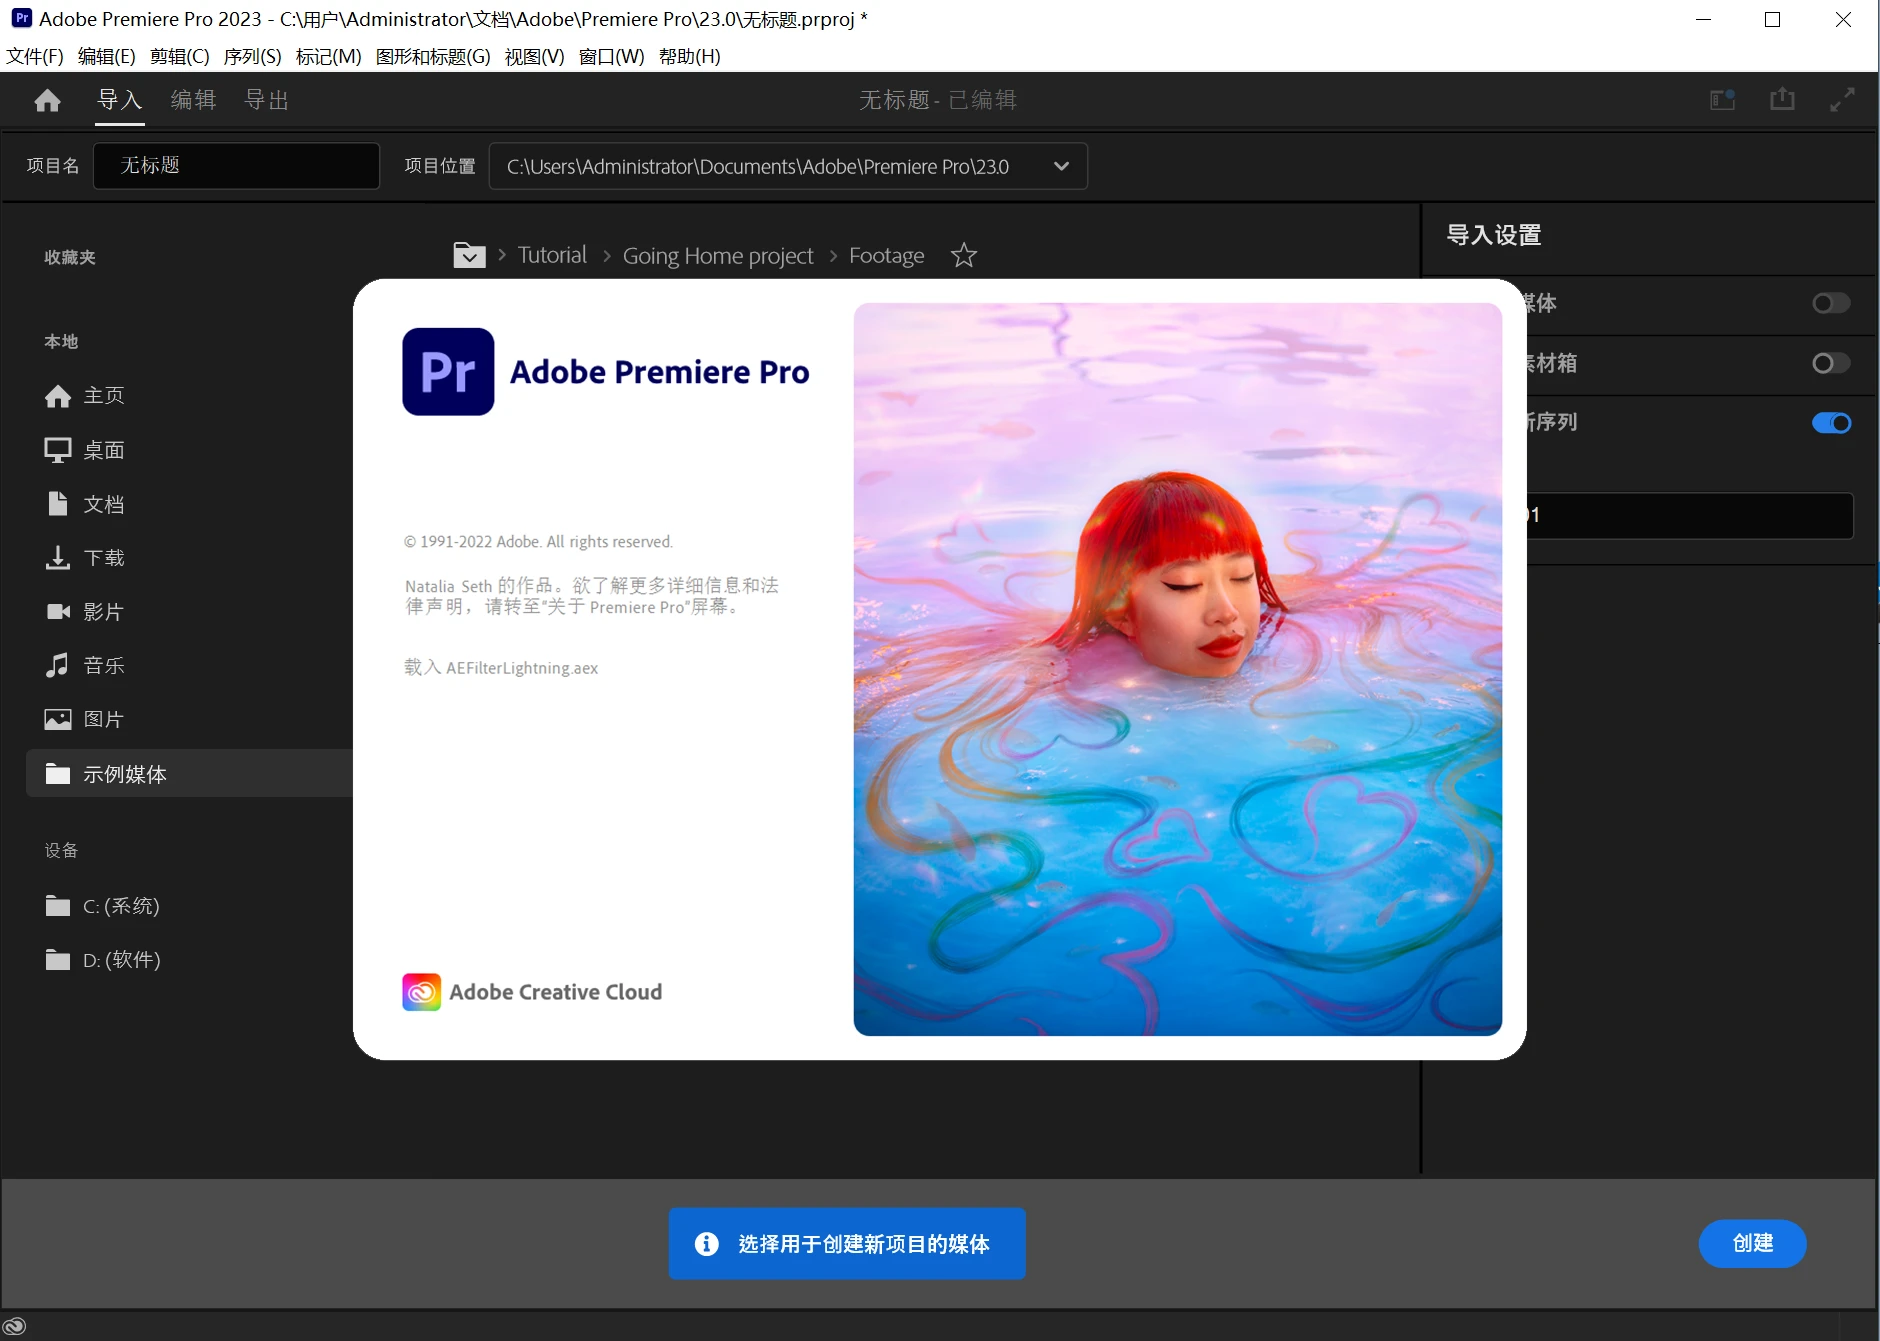 Adobe Premiere Pro 2023 (23.6.0) 特别版 - 果核剥壳